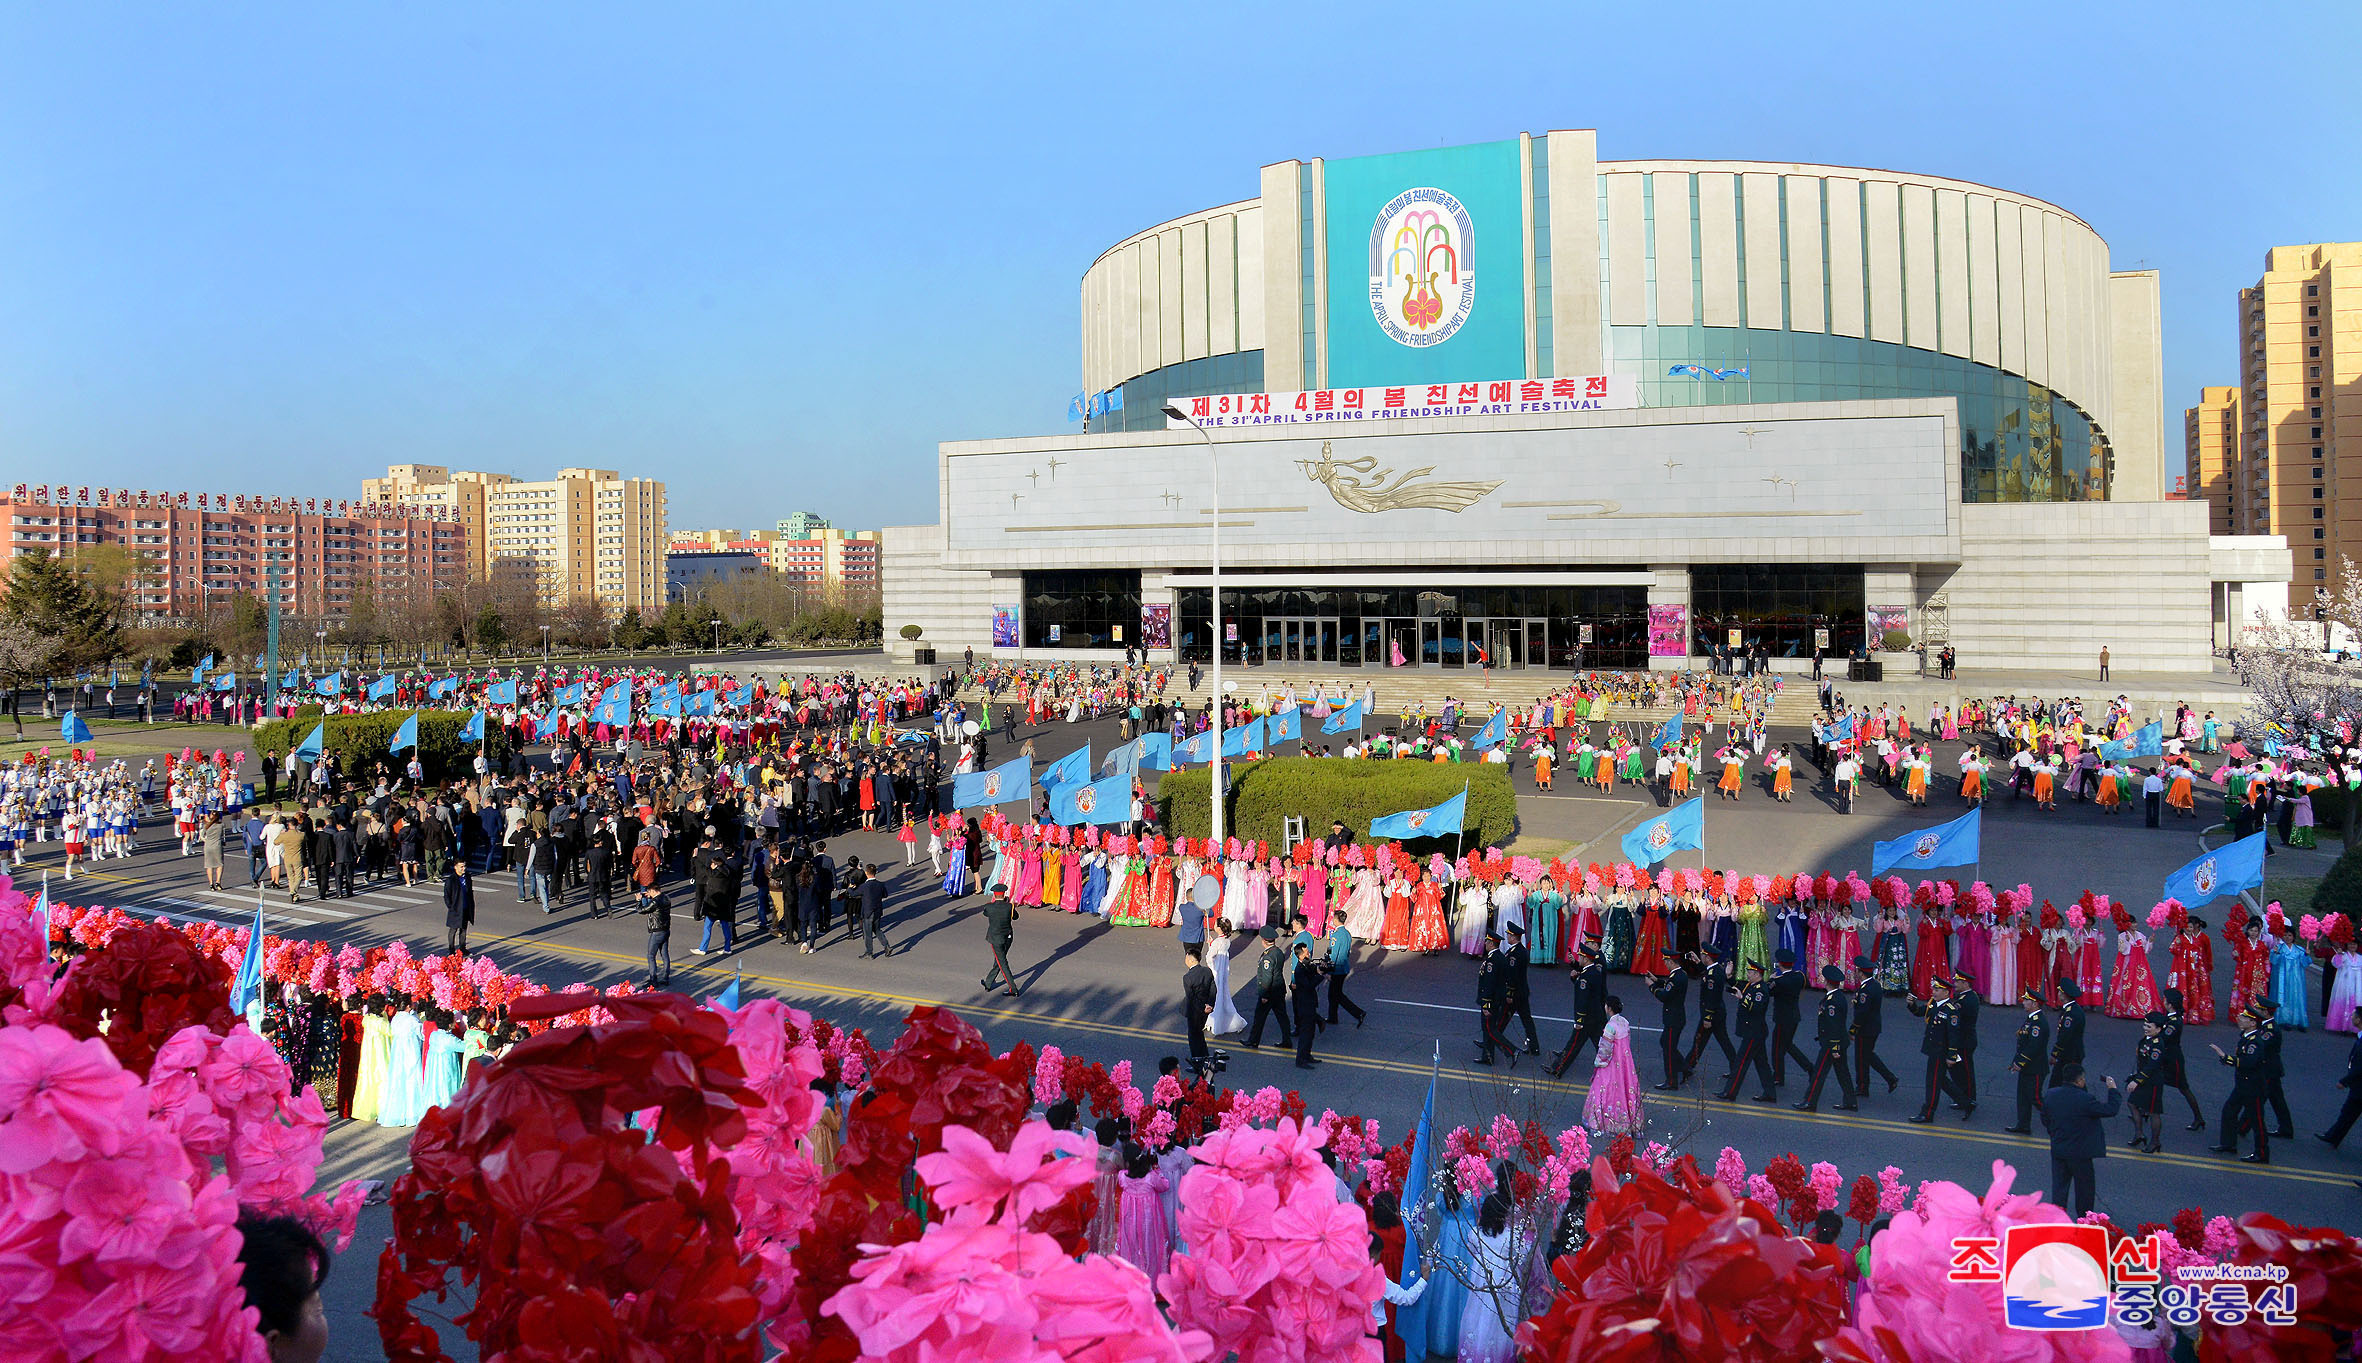 عروض خلال احتفالات يوم الشمس فى كوريا الشمالية